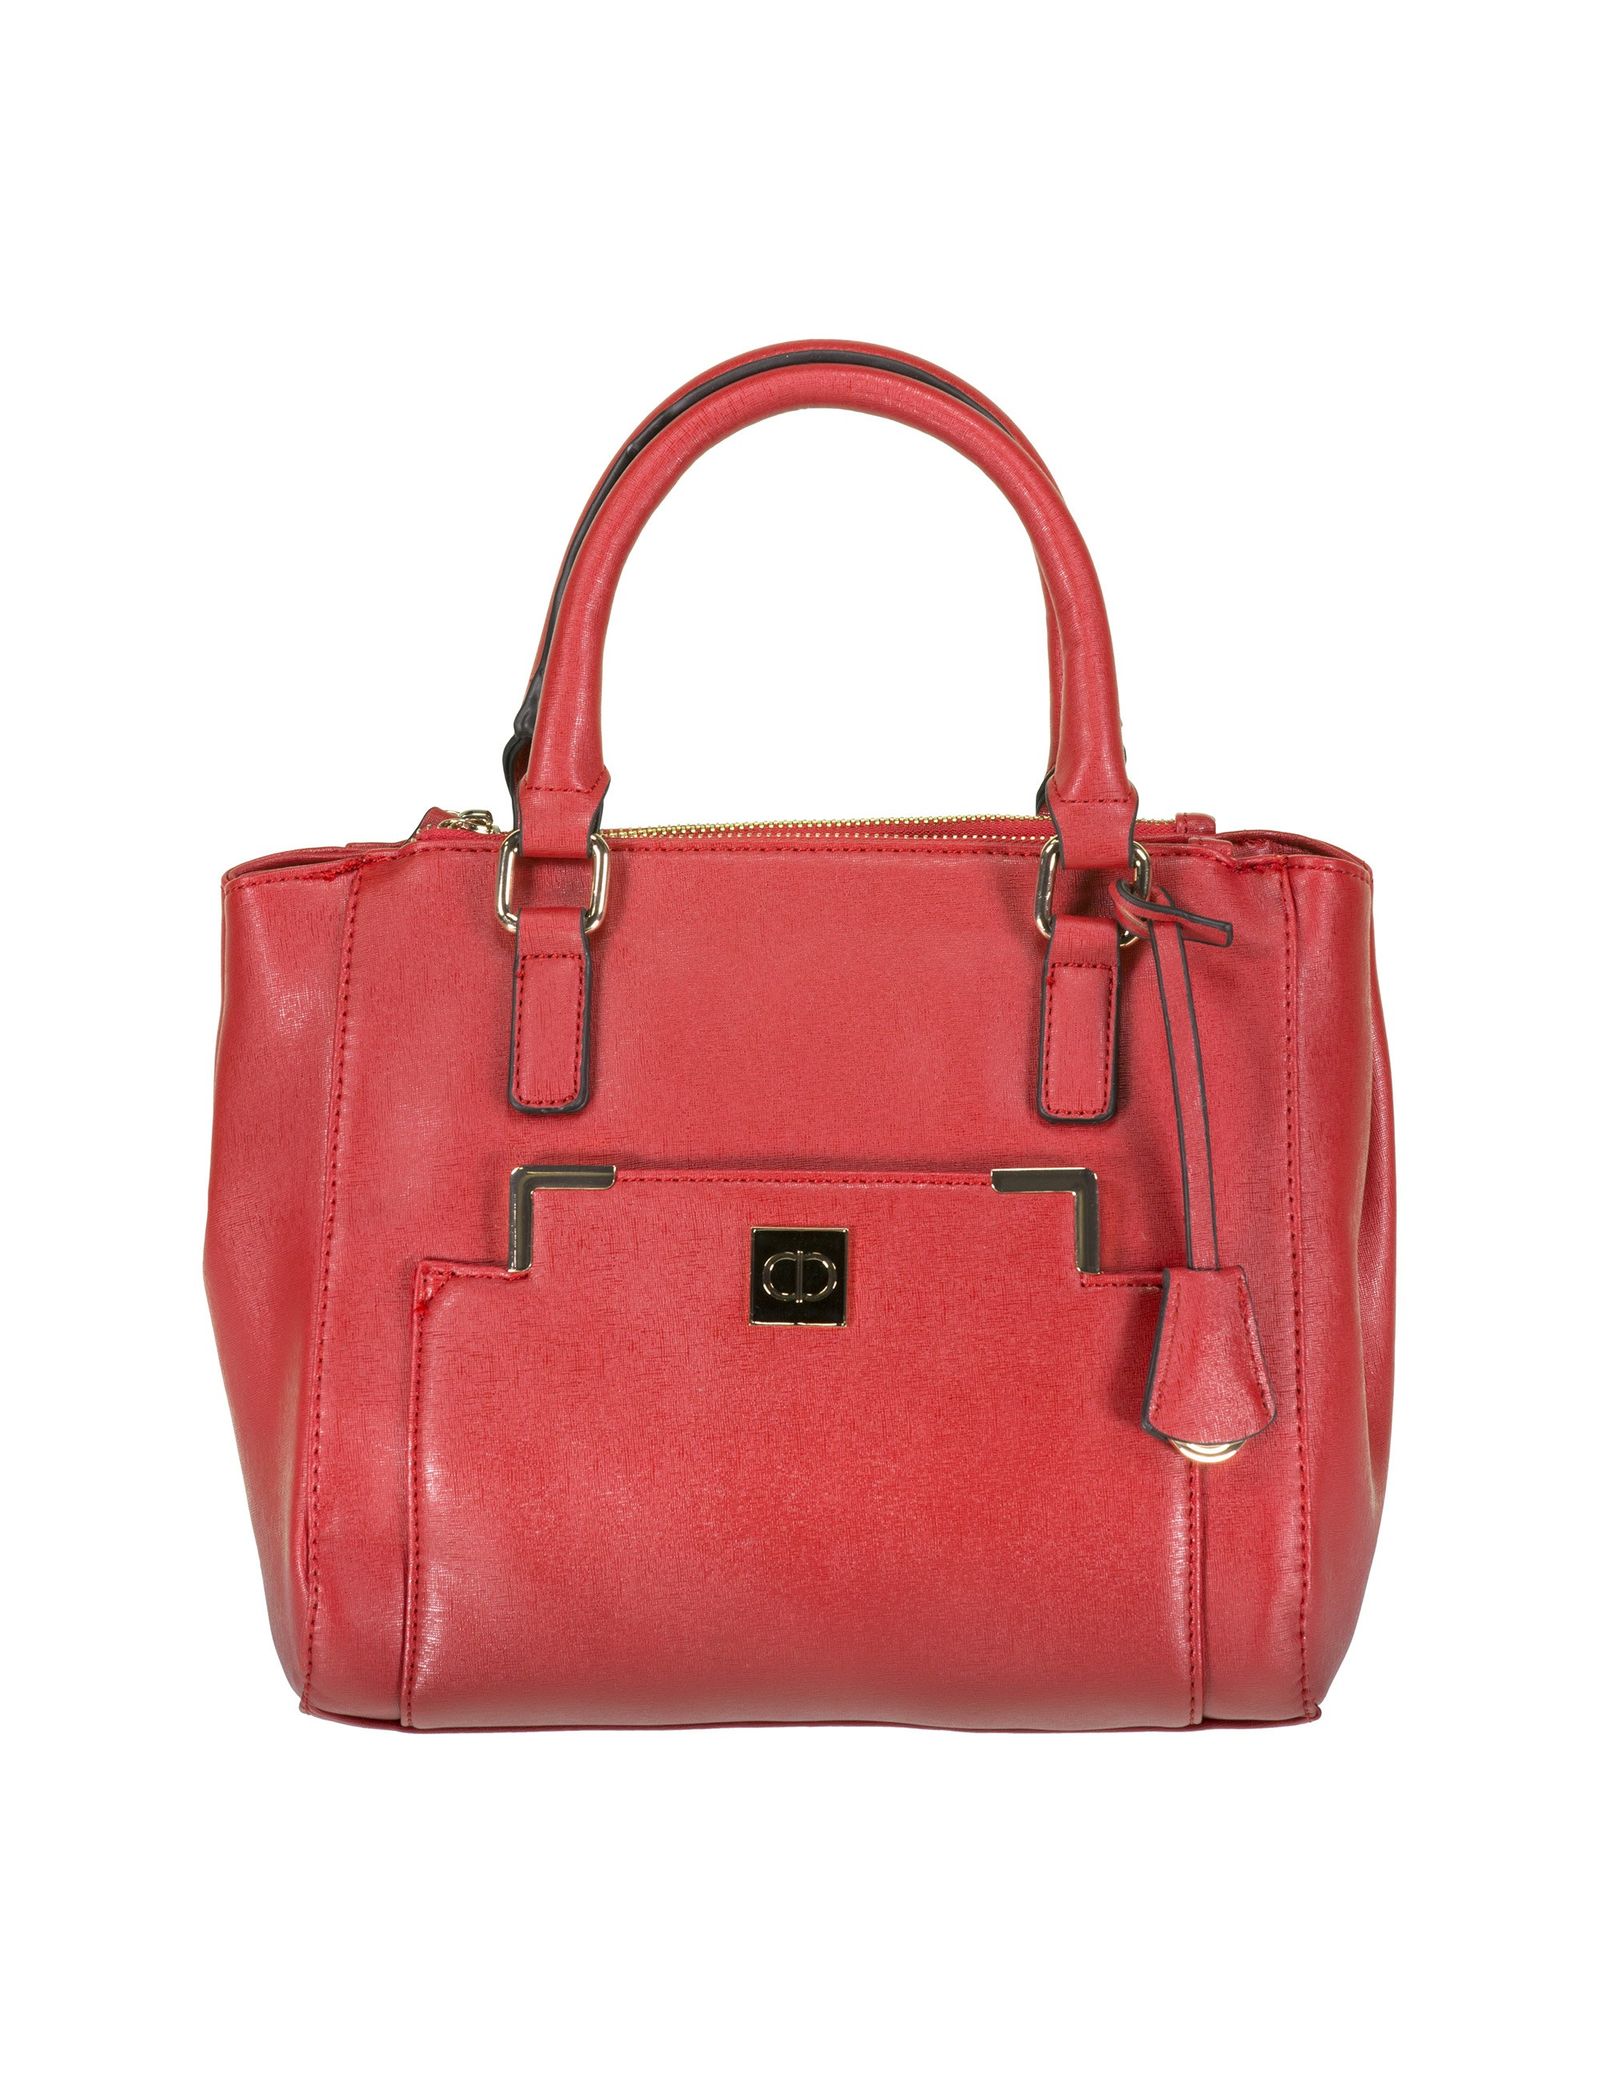 کیف دستی روزمره زنانه - کالکشن تک سایز - قرمز براق  - 2